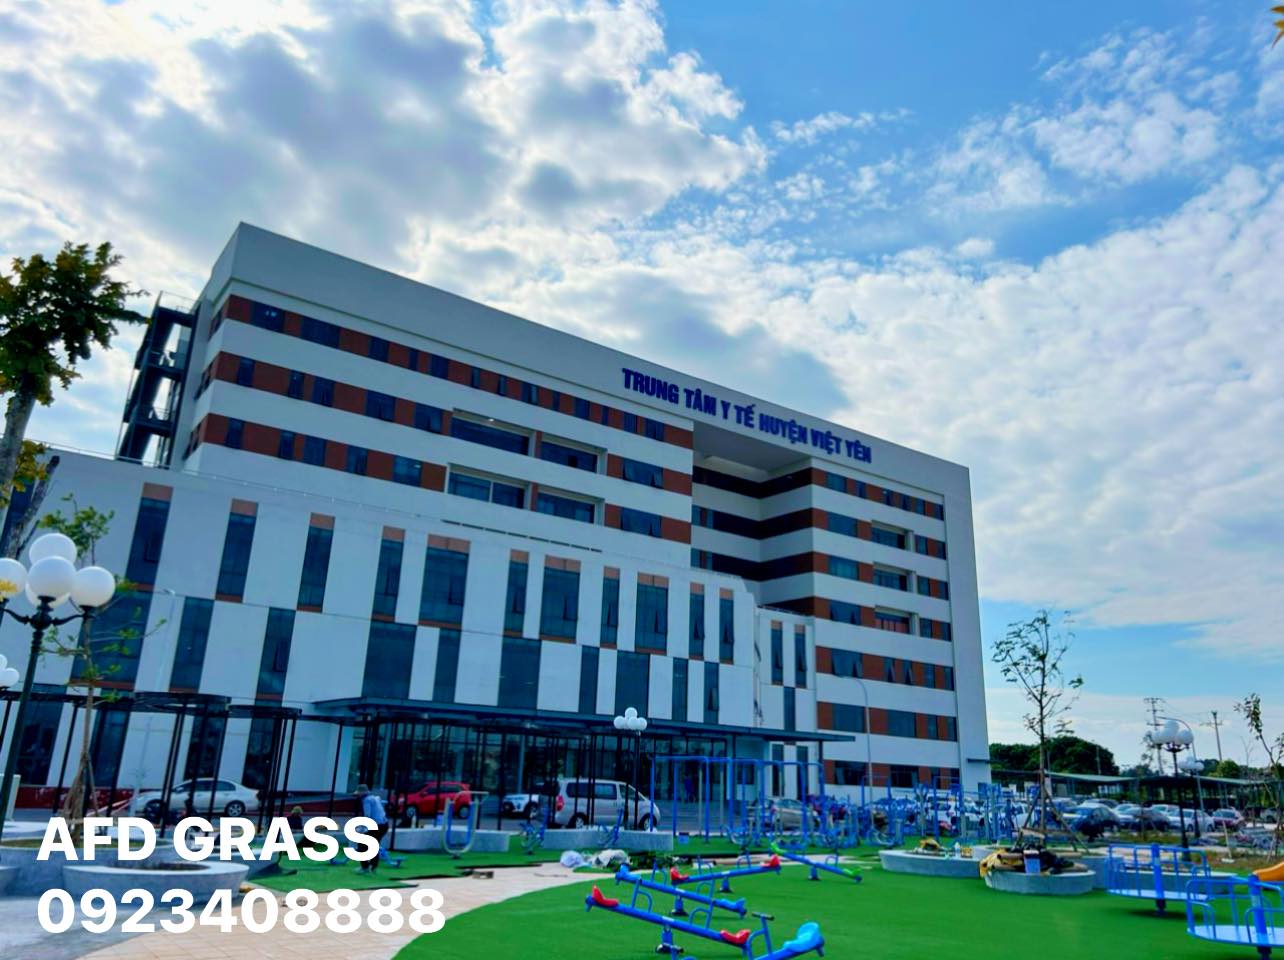 Thi công cỏ sân vườn tại Trung tâm Y tế huyện Việt Yên tỉnh Bắc Giang